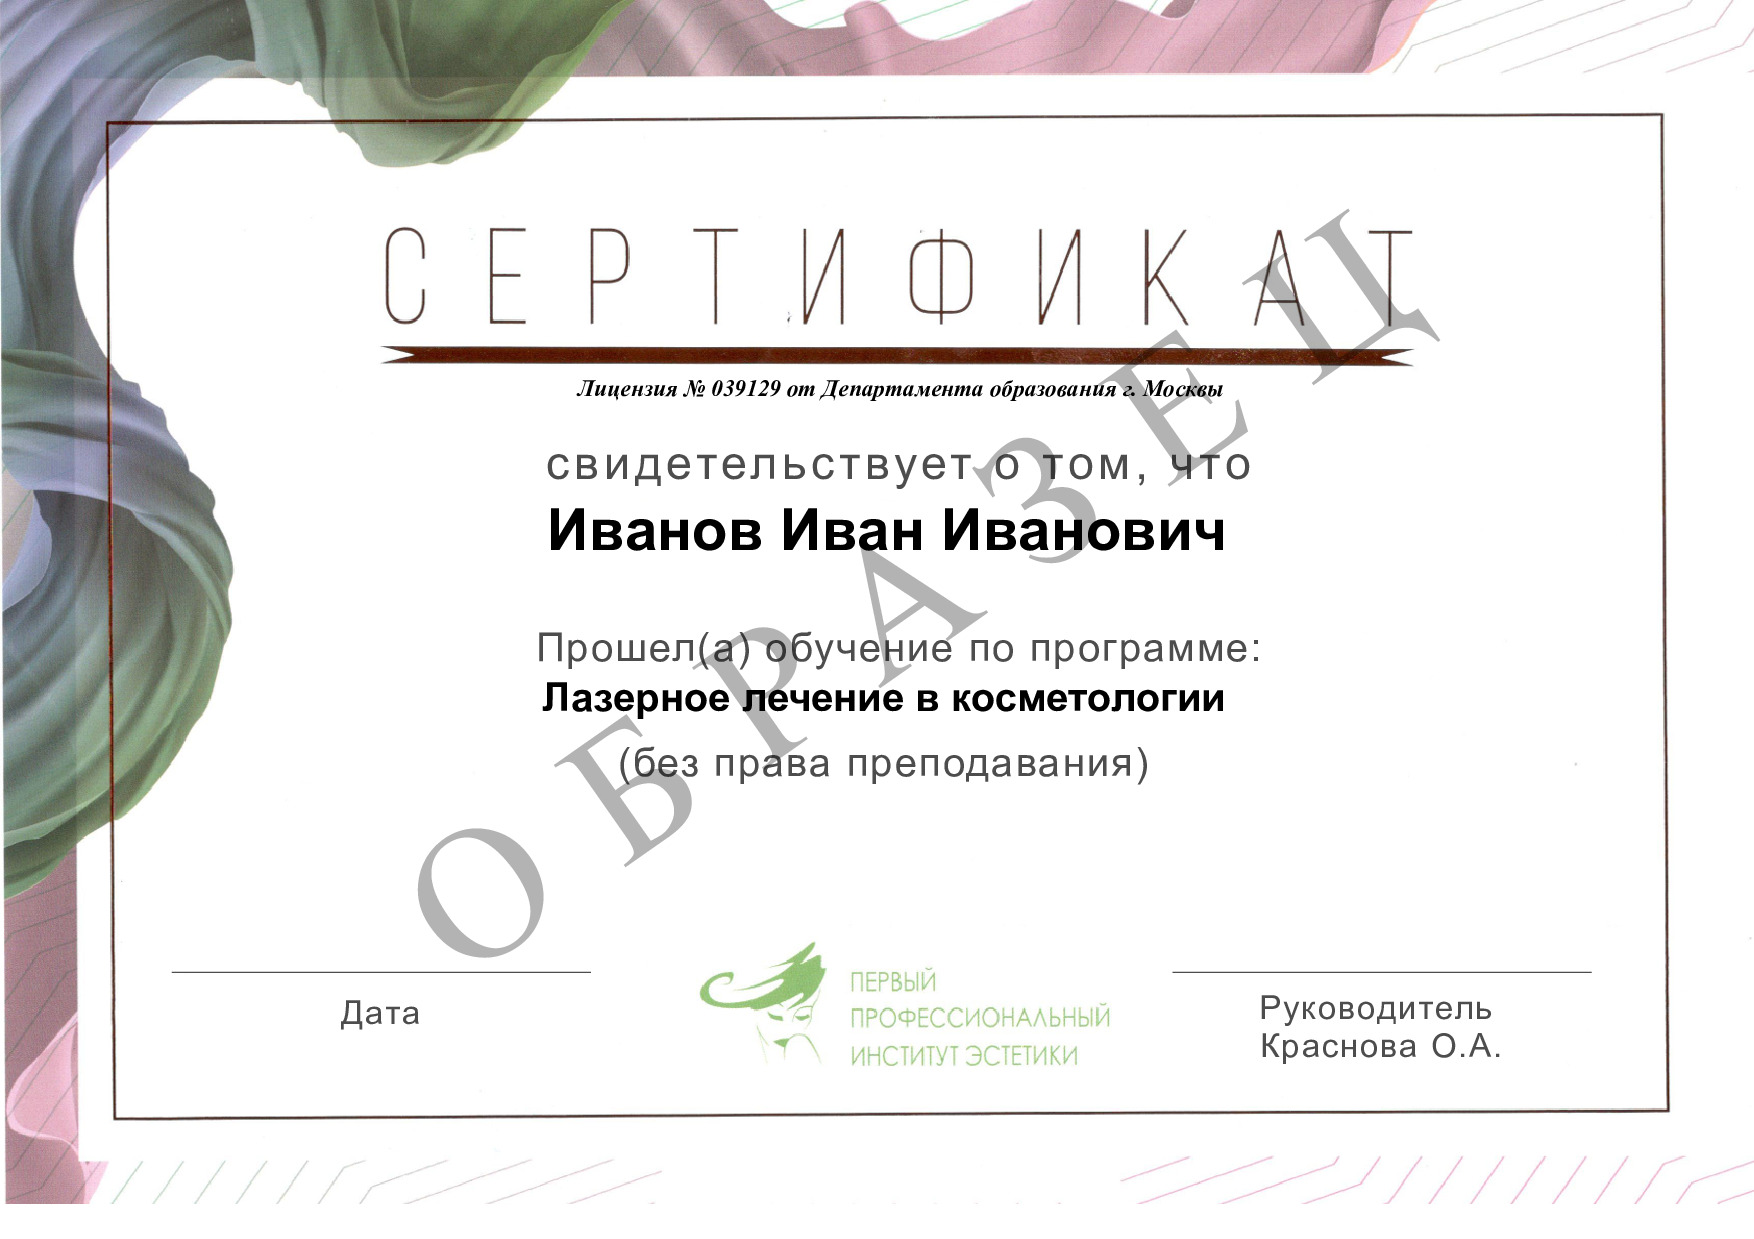 Обучение косметолог эстетист в москве с дипломом гос образца